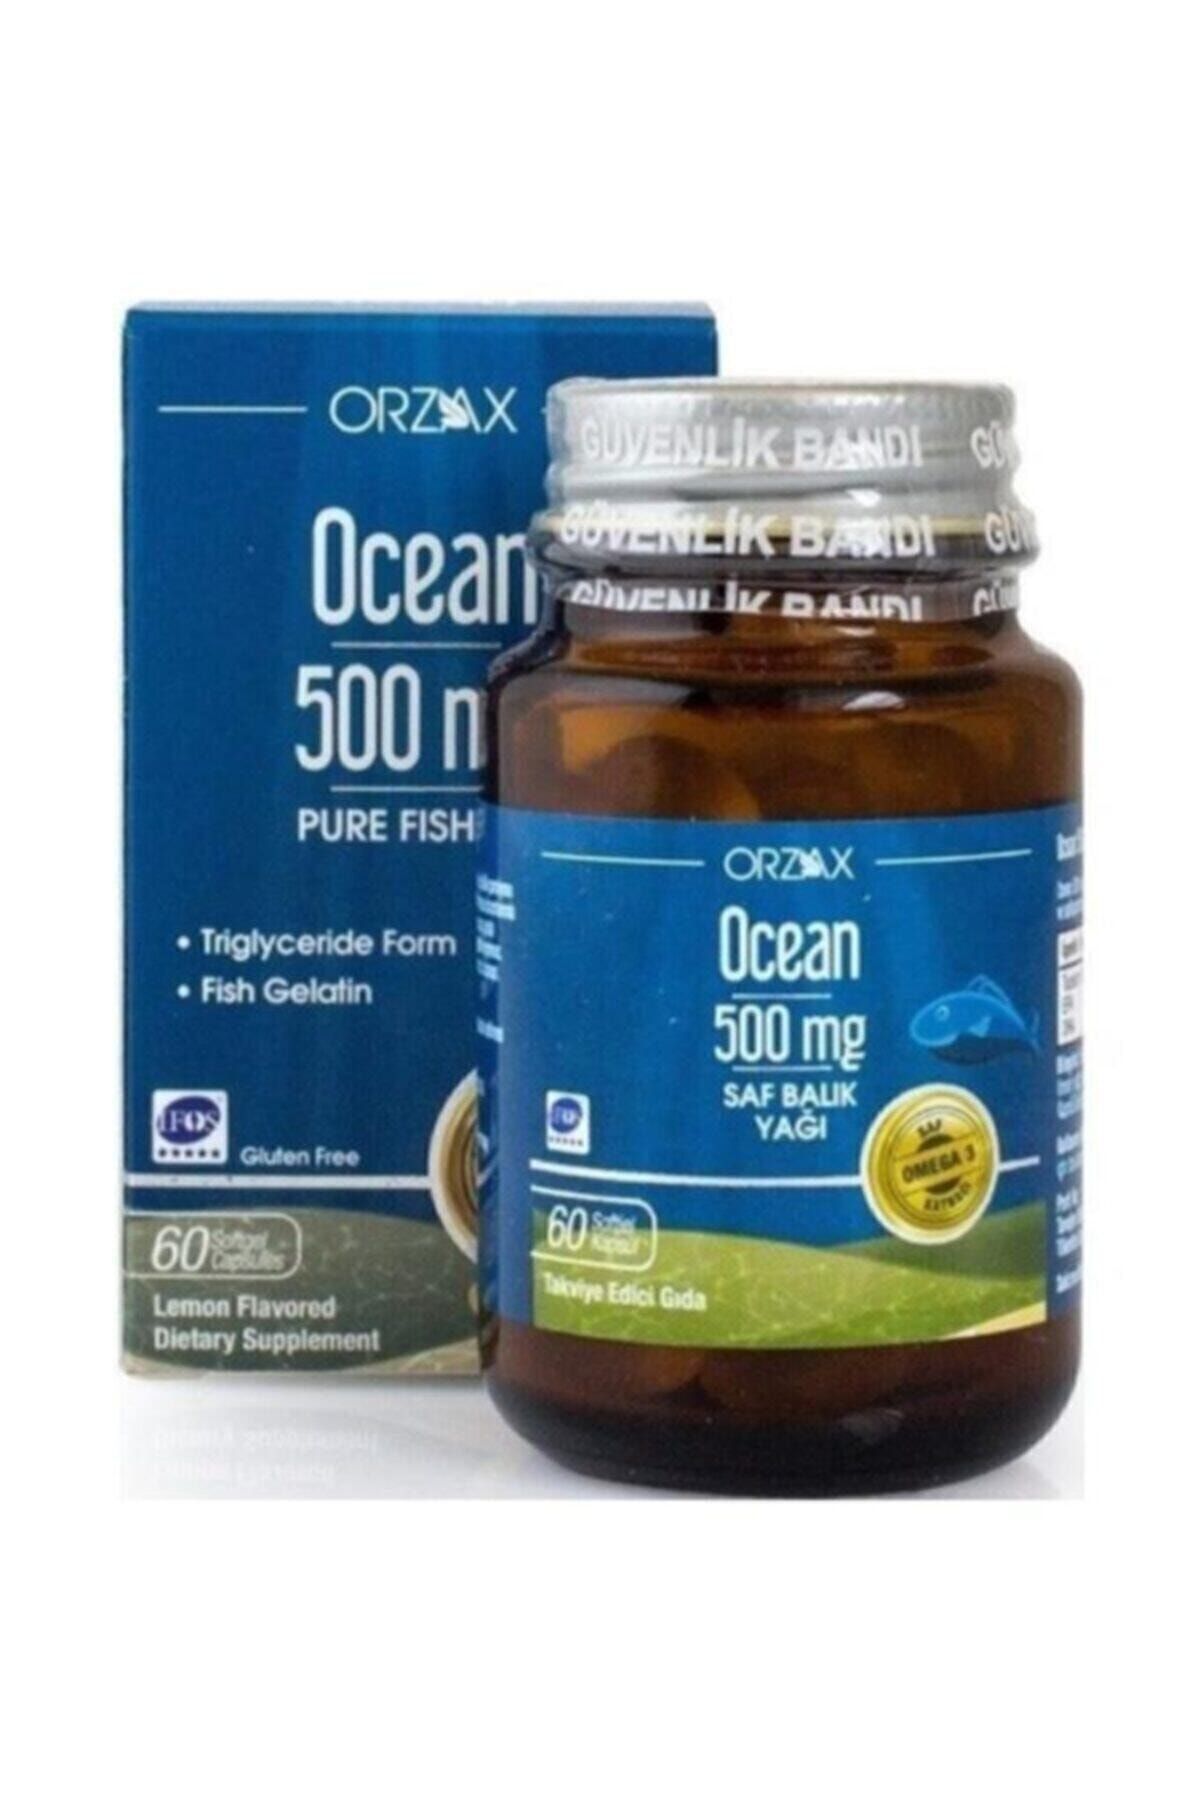 Ocean Ocean Balık Yağı 500mg Takviye Edici Gıda 60 Kapsül